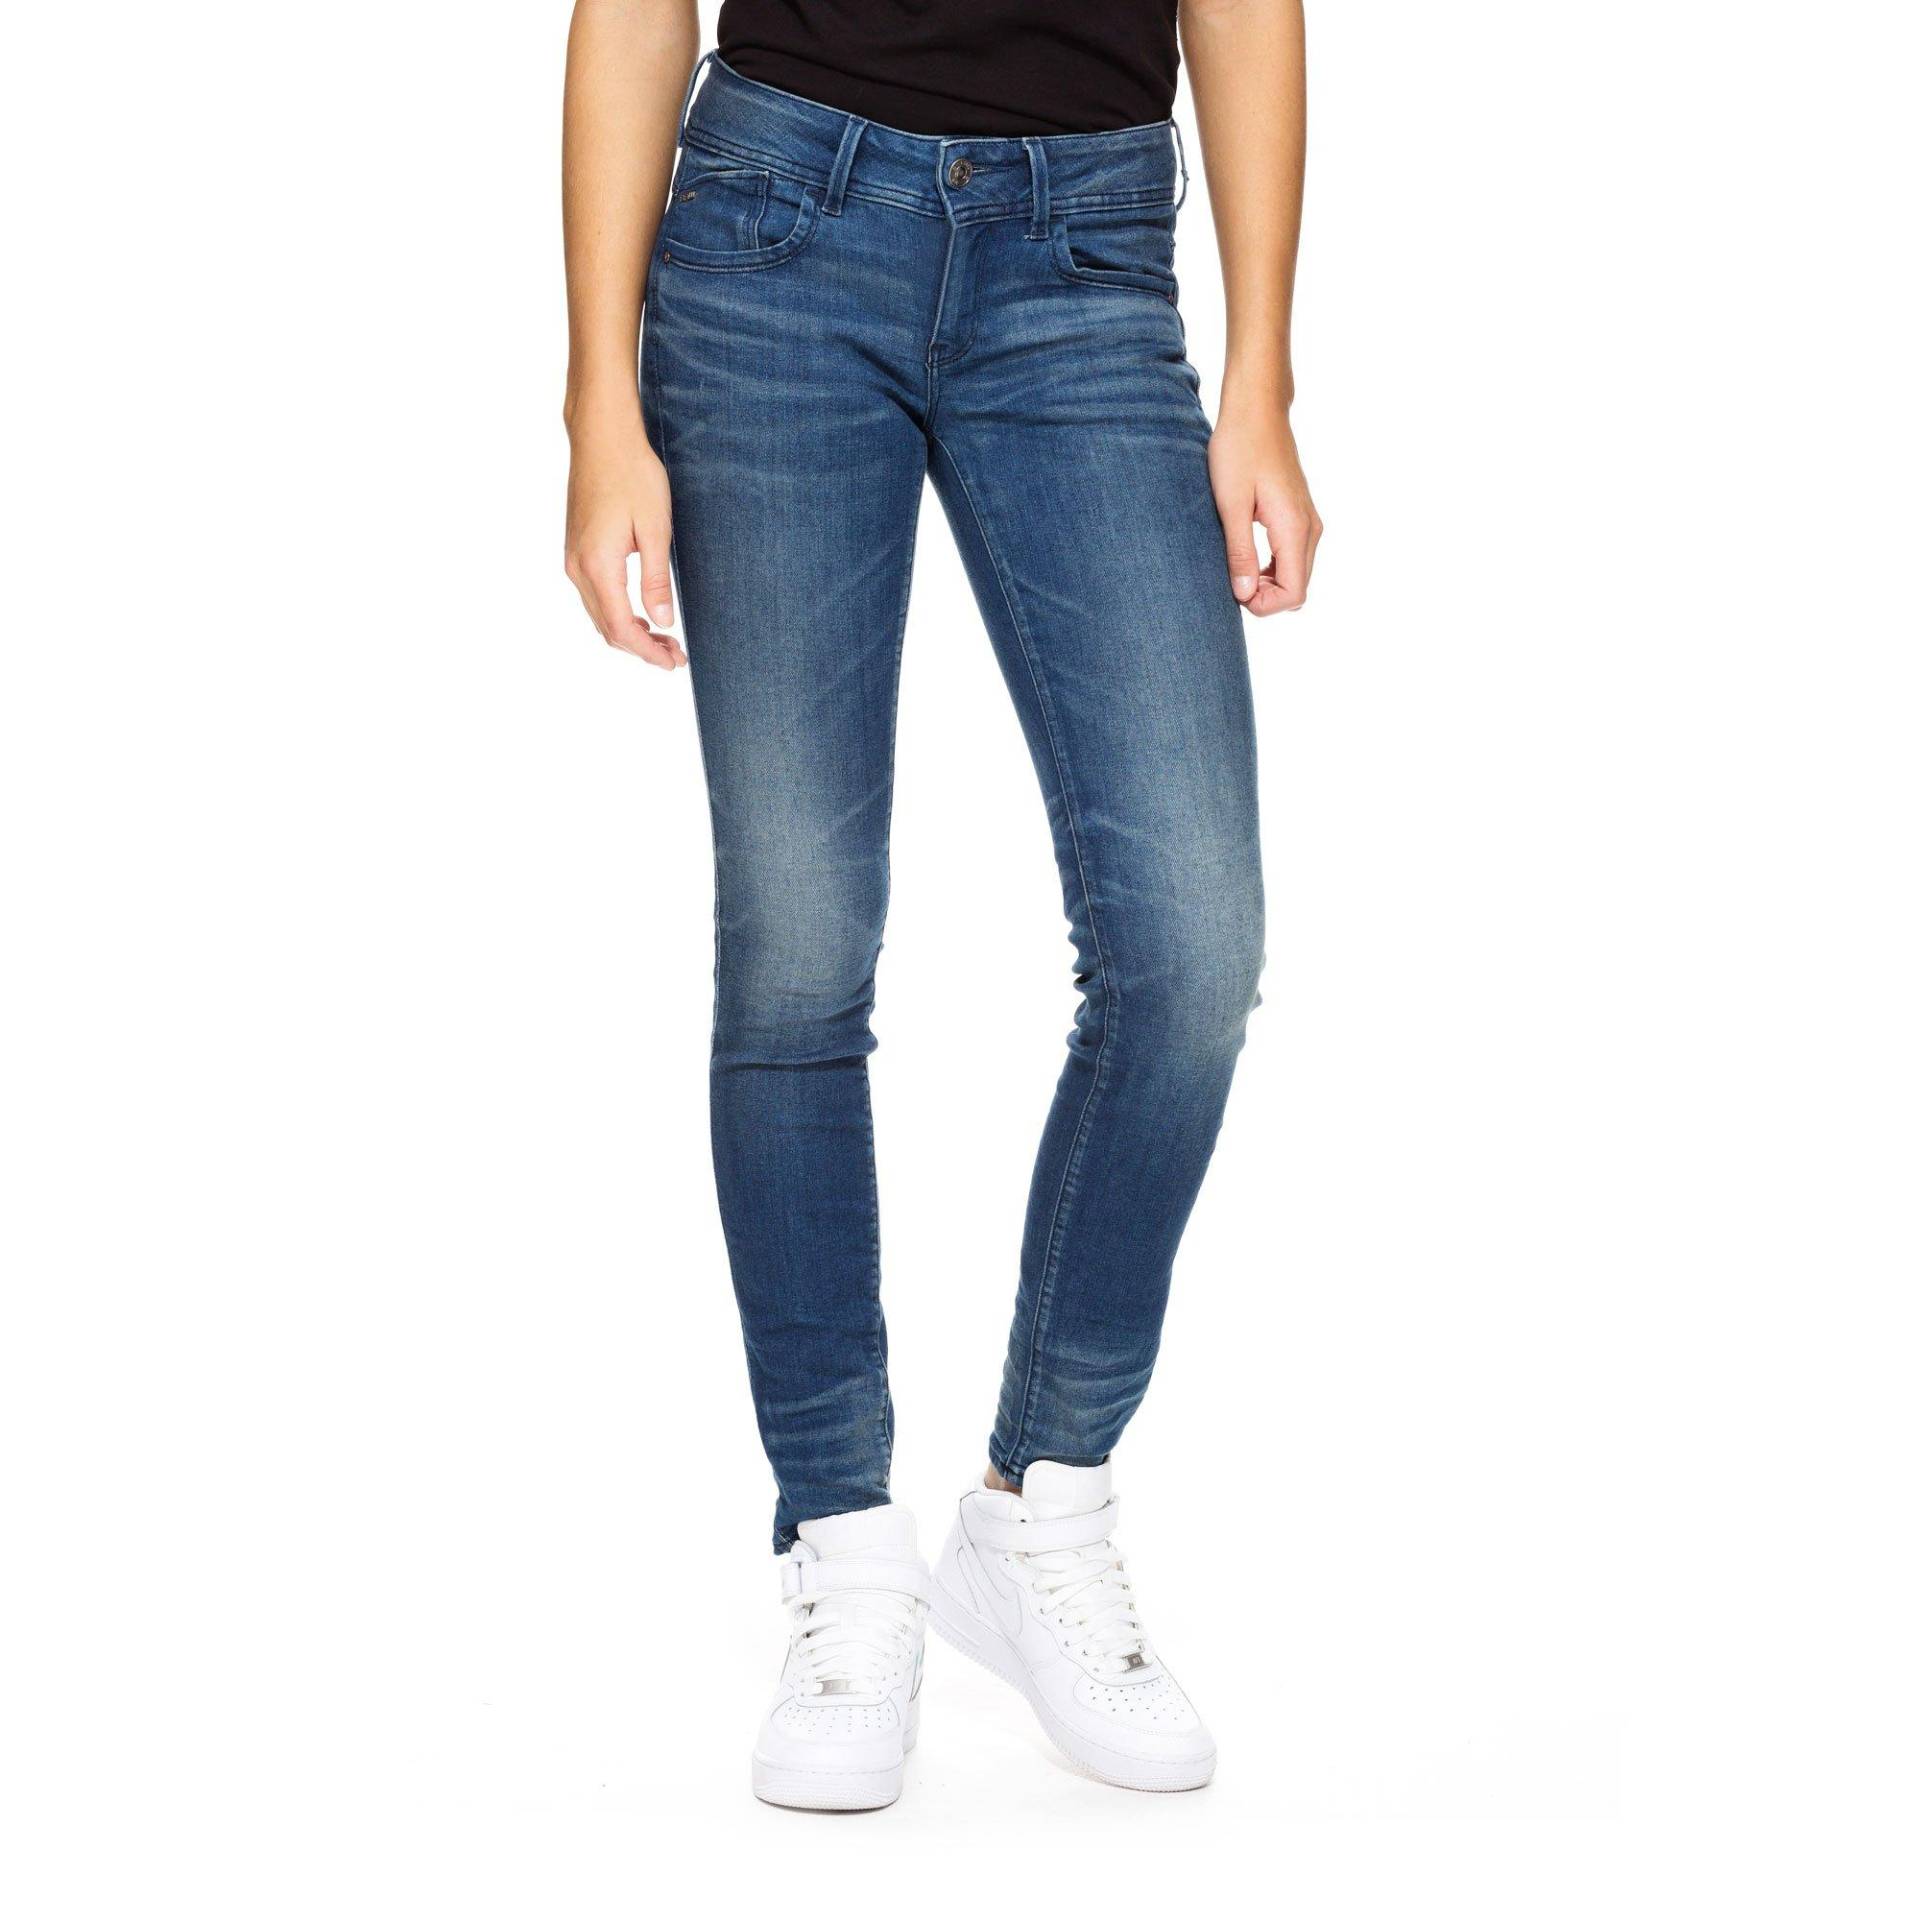 Jeans, Skinny Fit Damen Blau Denim L32/W27 von G-STAR